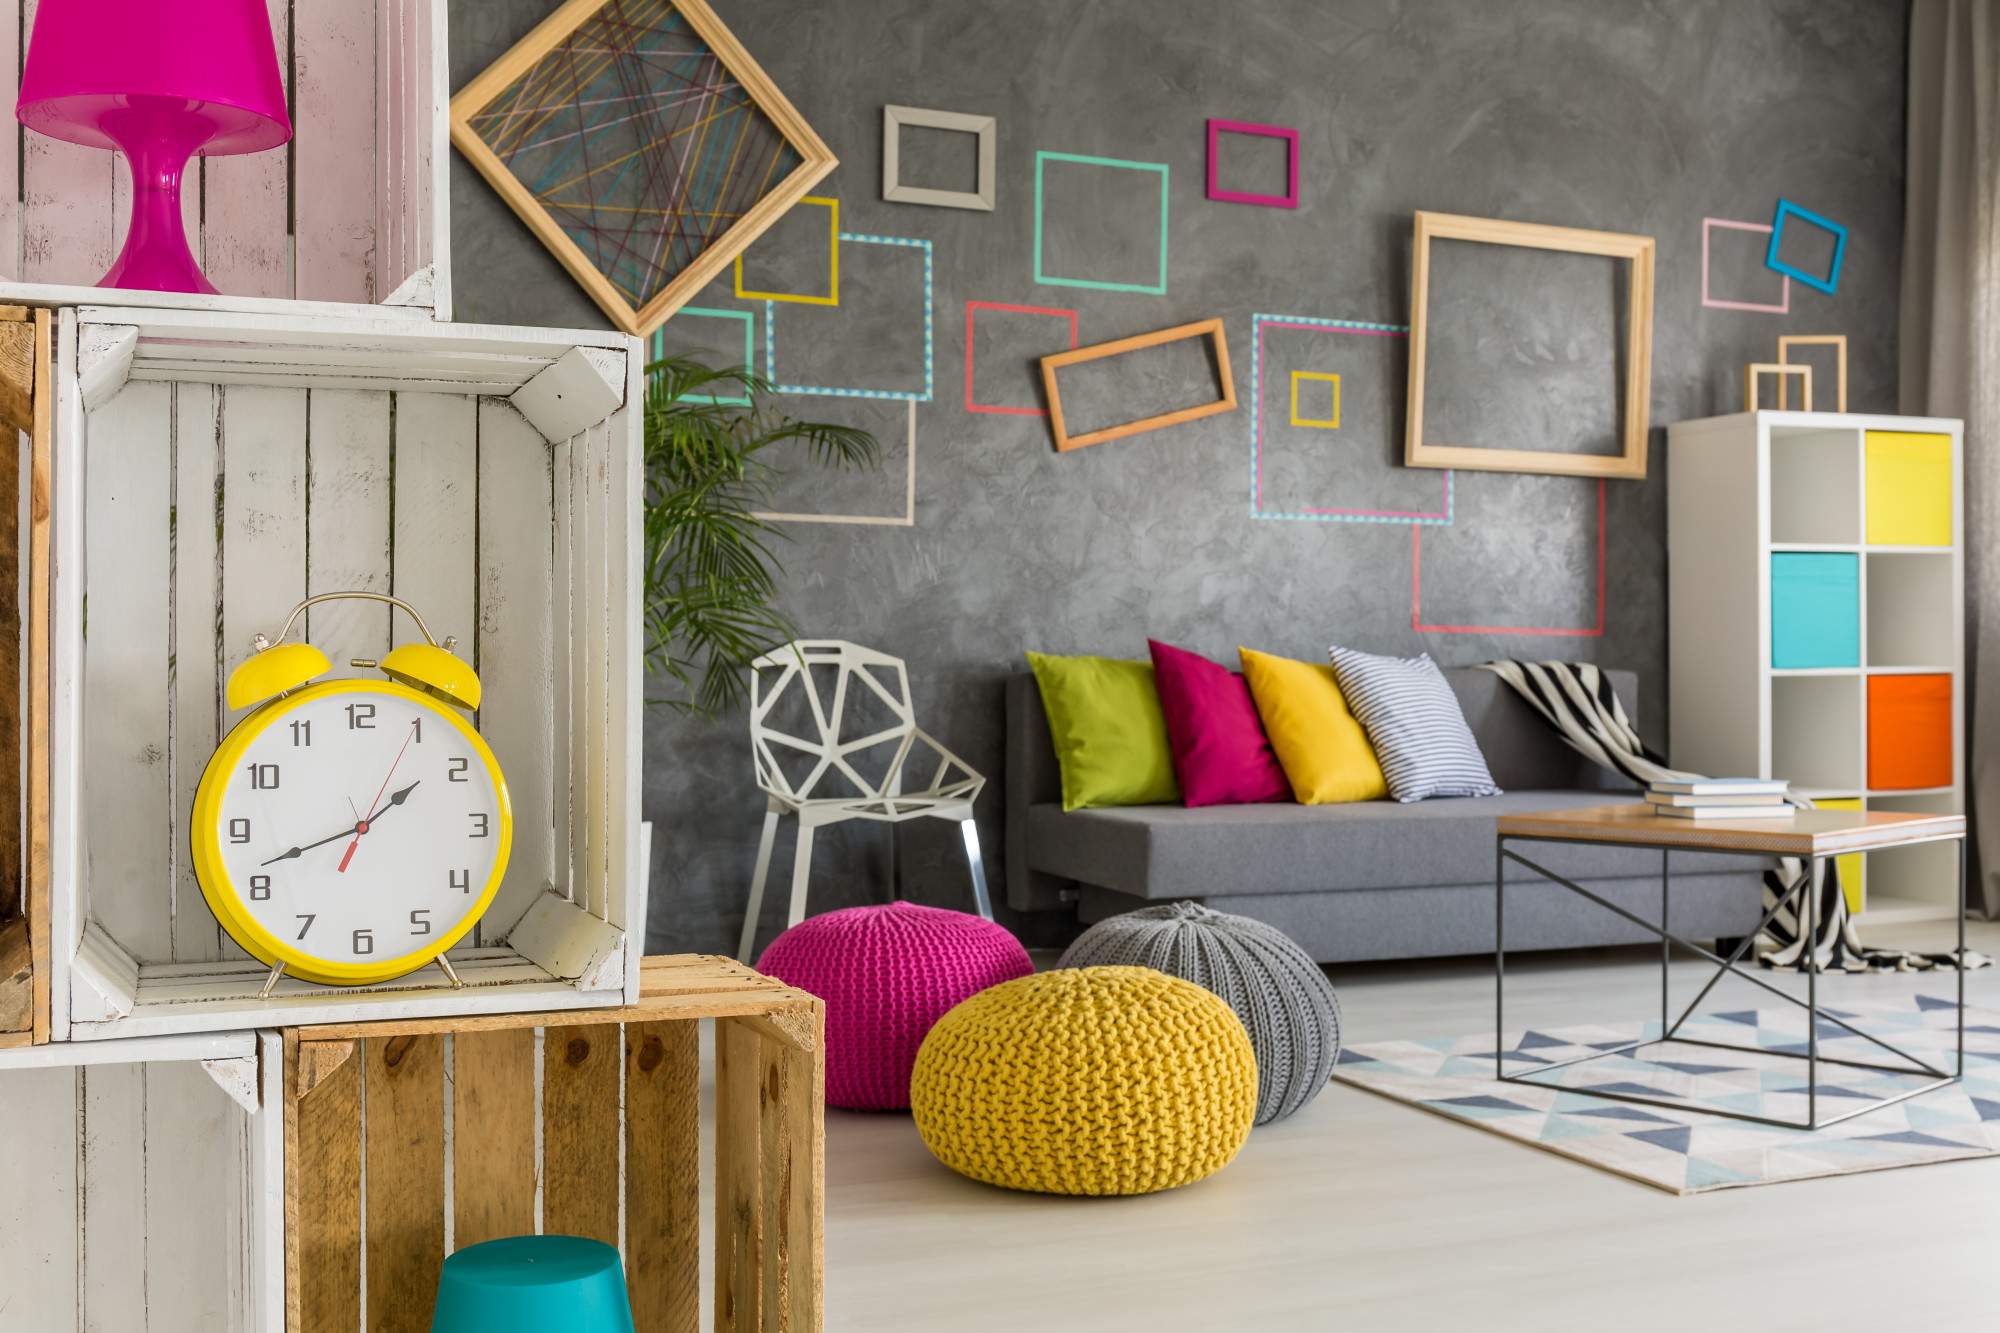 8 Unique Home Decor Ideas to Transform Your Space